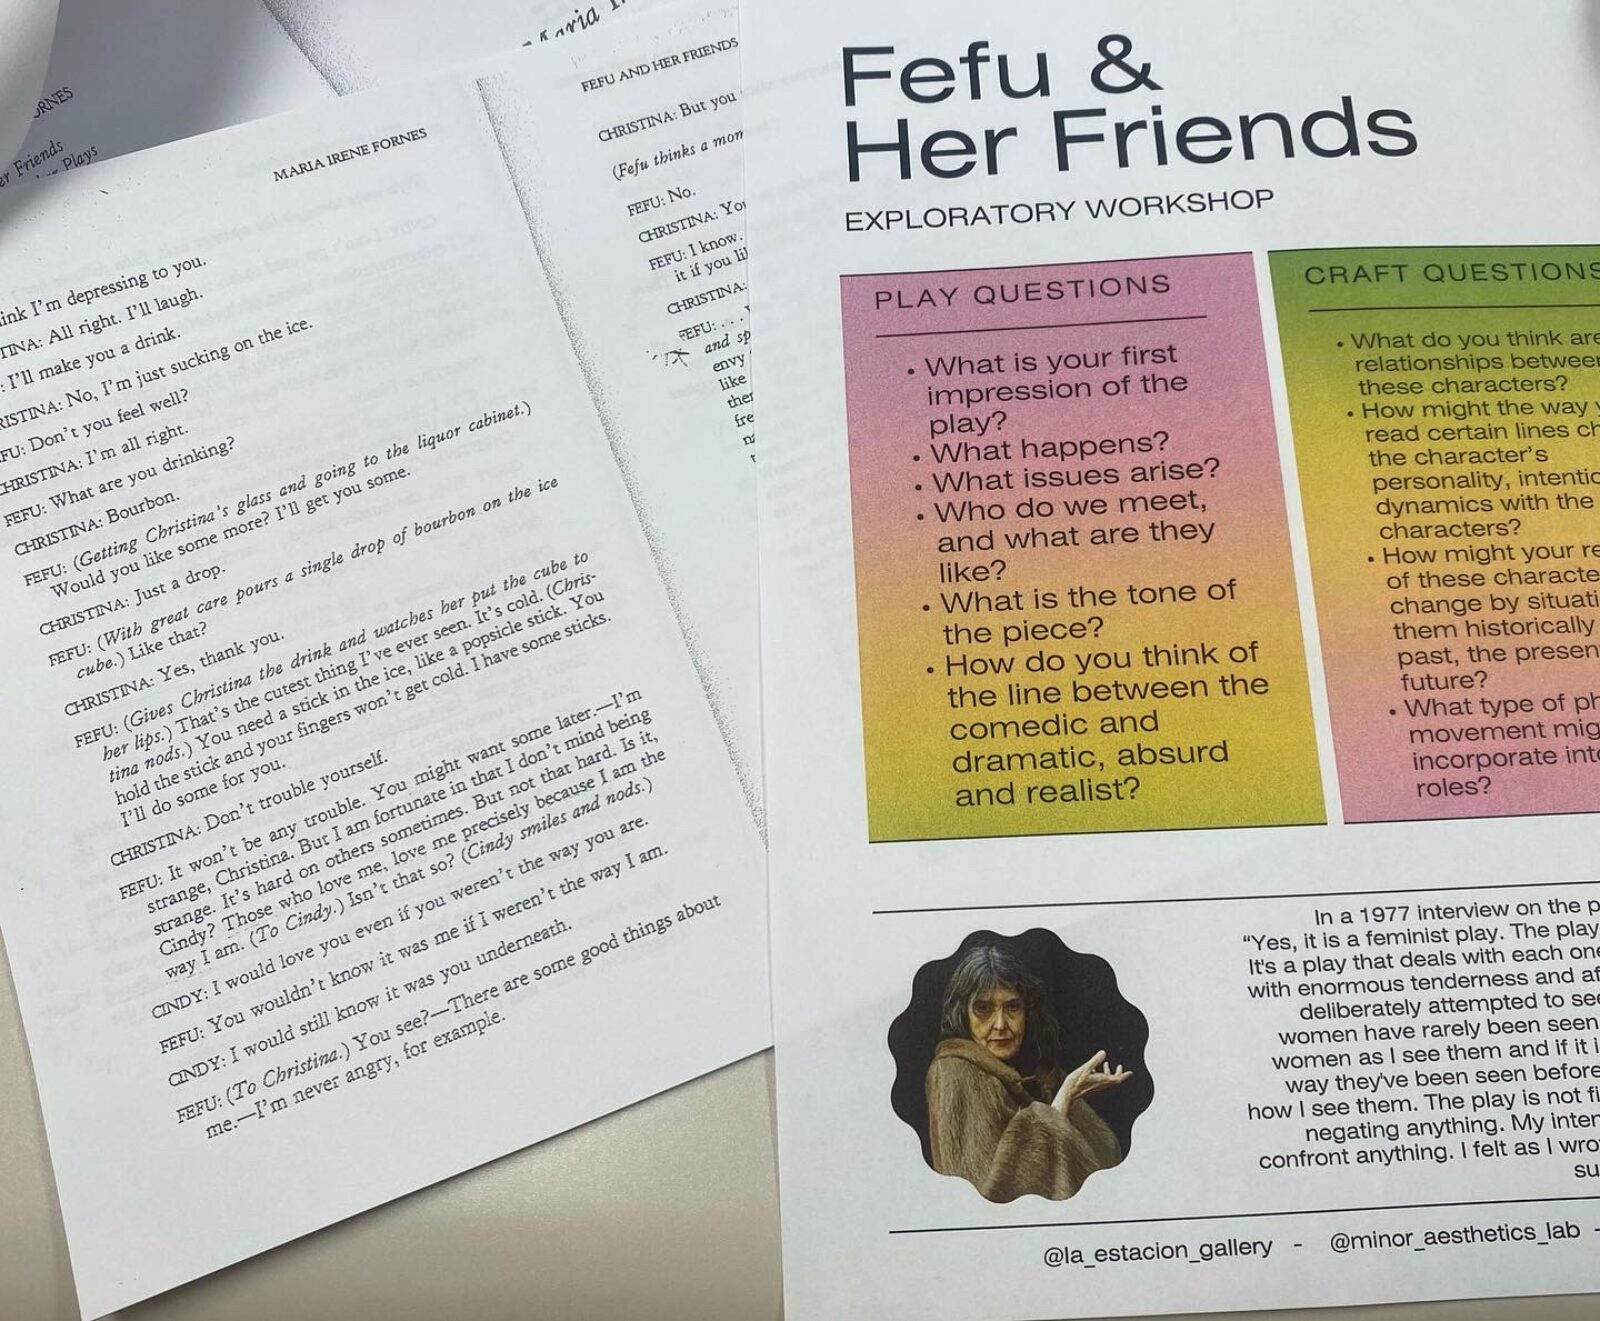 Fefu & her Friends materials